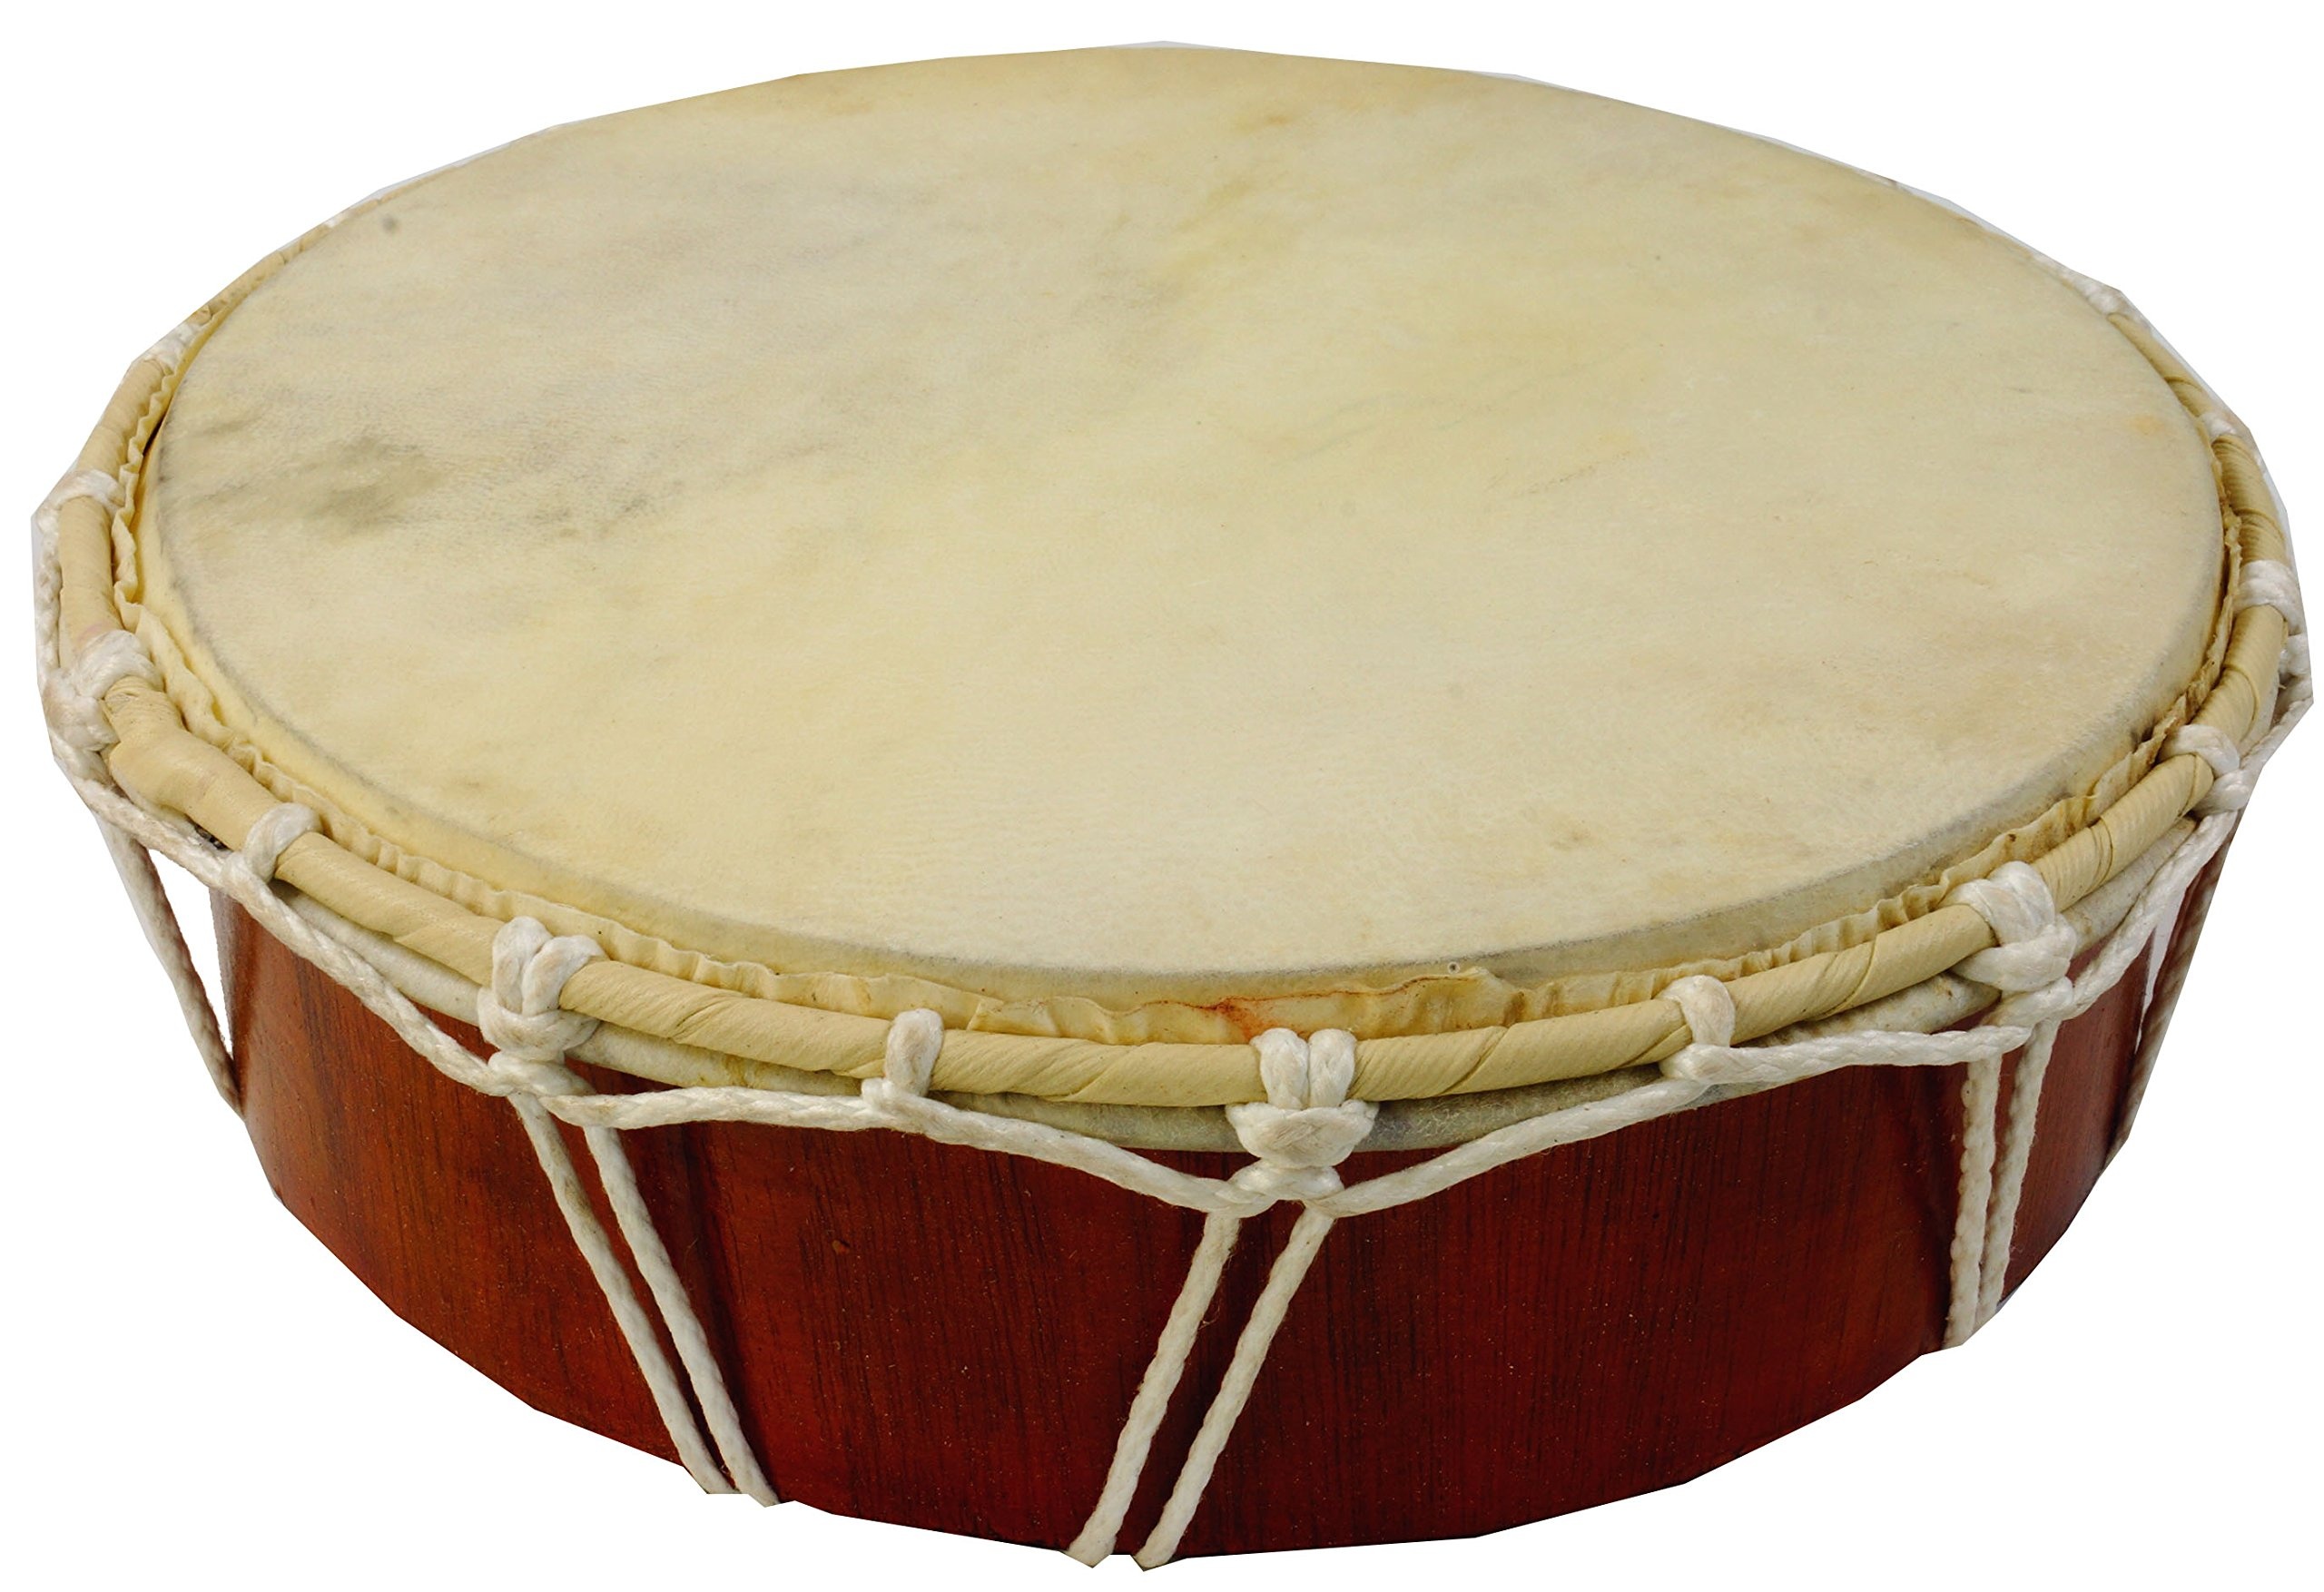 GURU SHOP Flache Holztrommel, Percussion Rhythmus Klang Instrumente, Frame Drum, Hand Trommel - 32 cm, Braun, Musikinstrumente